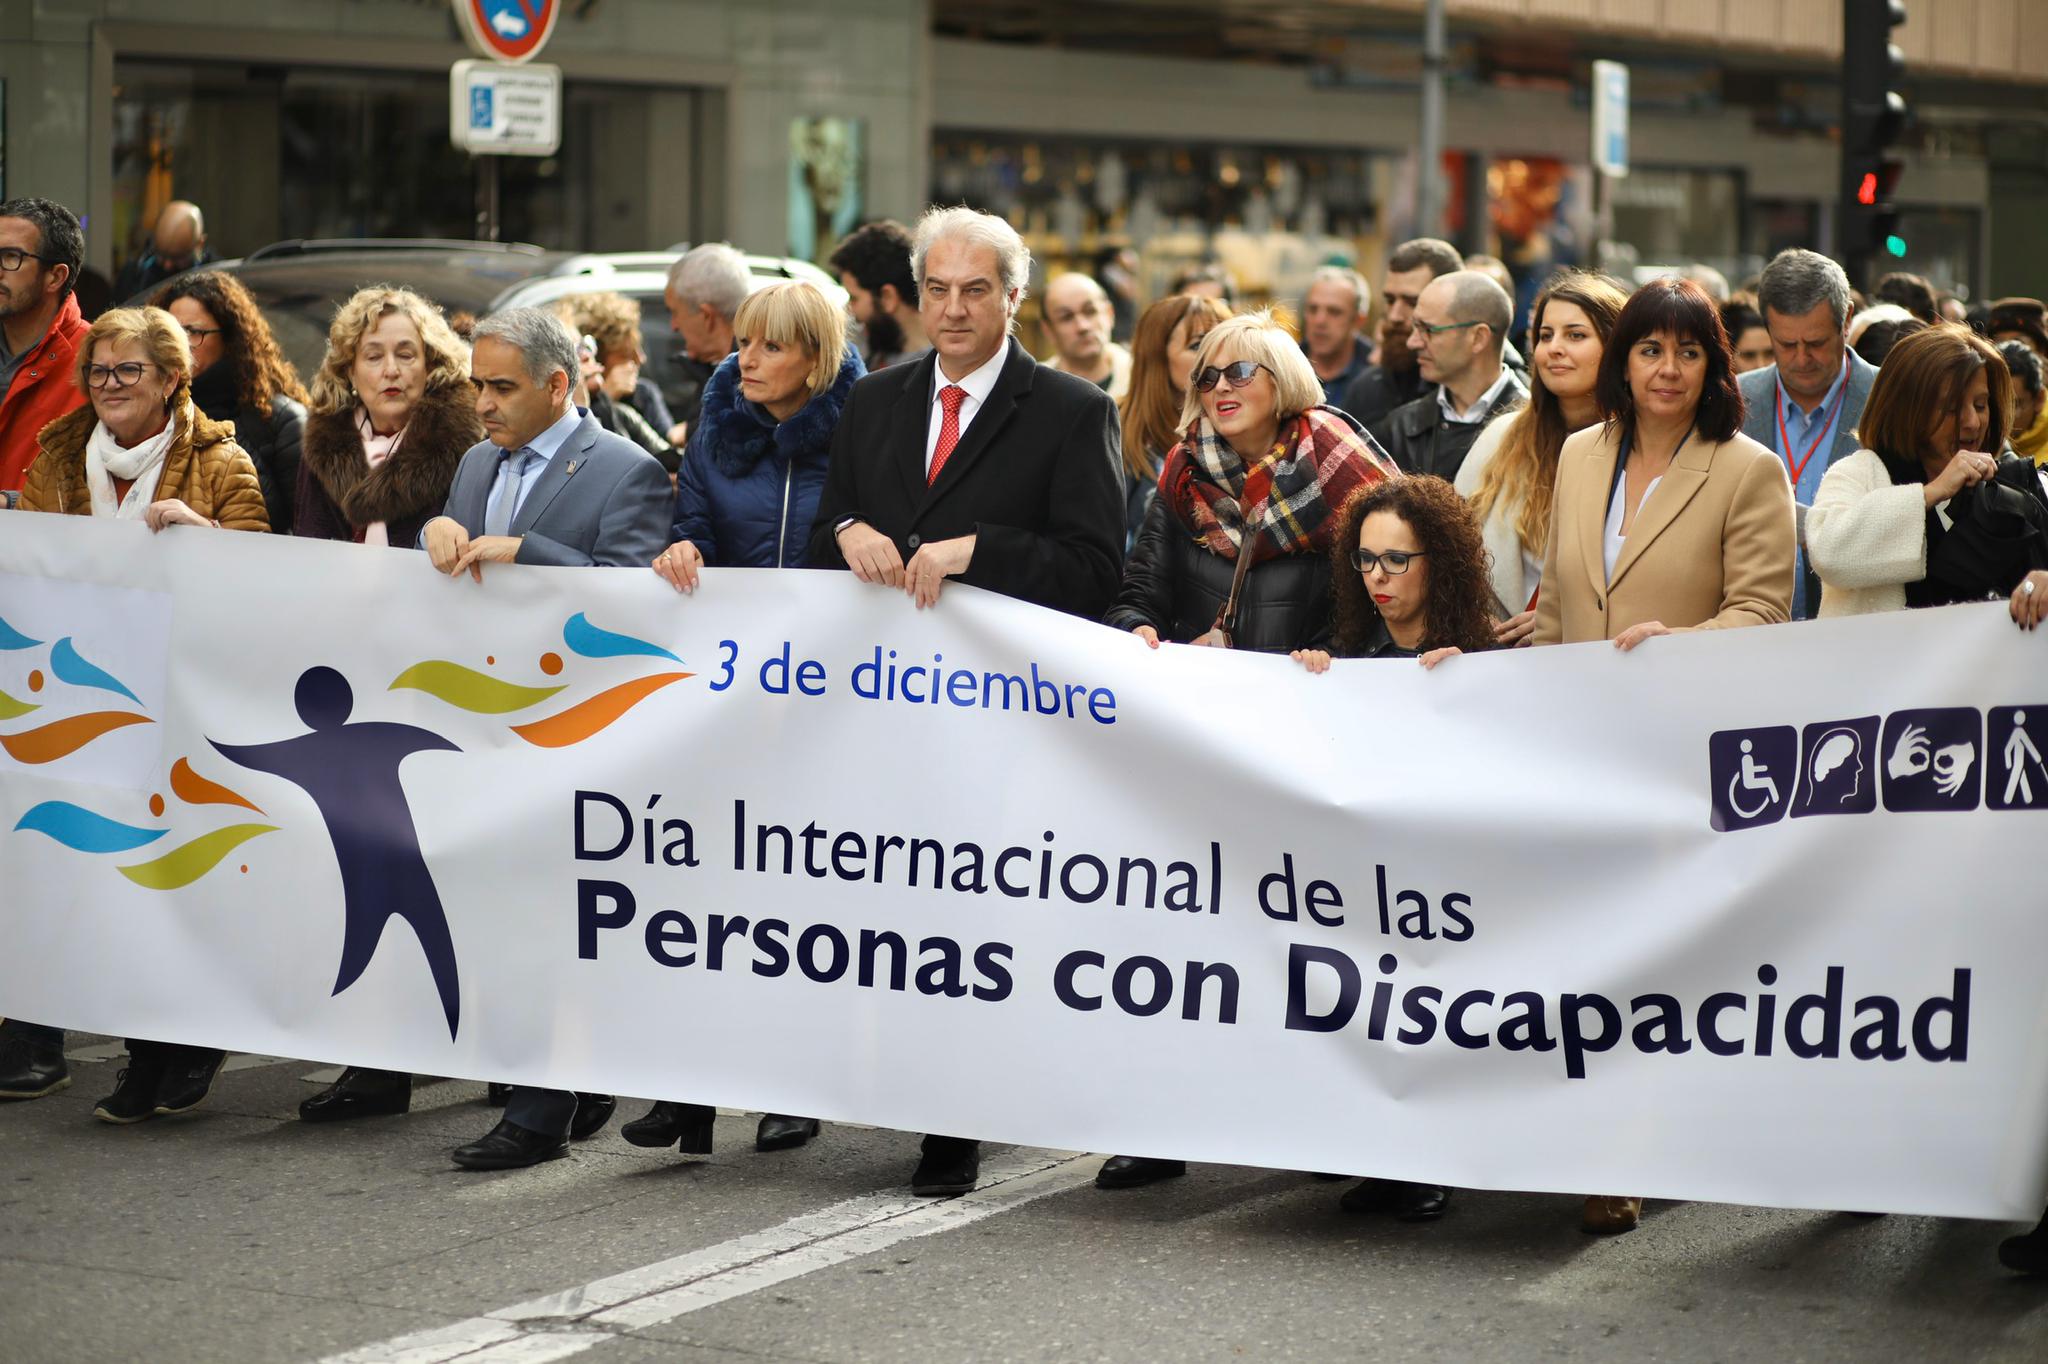 Unas 200 personas han participado en la marcha solidaria con motivo del 'Día internacional de las personas con discapidad' 